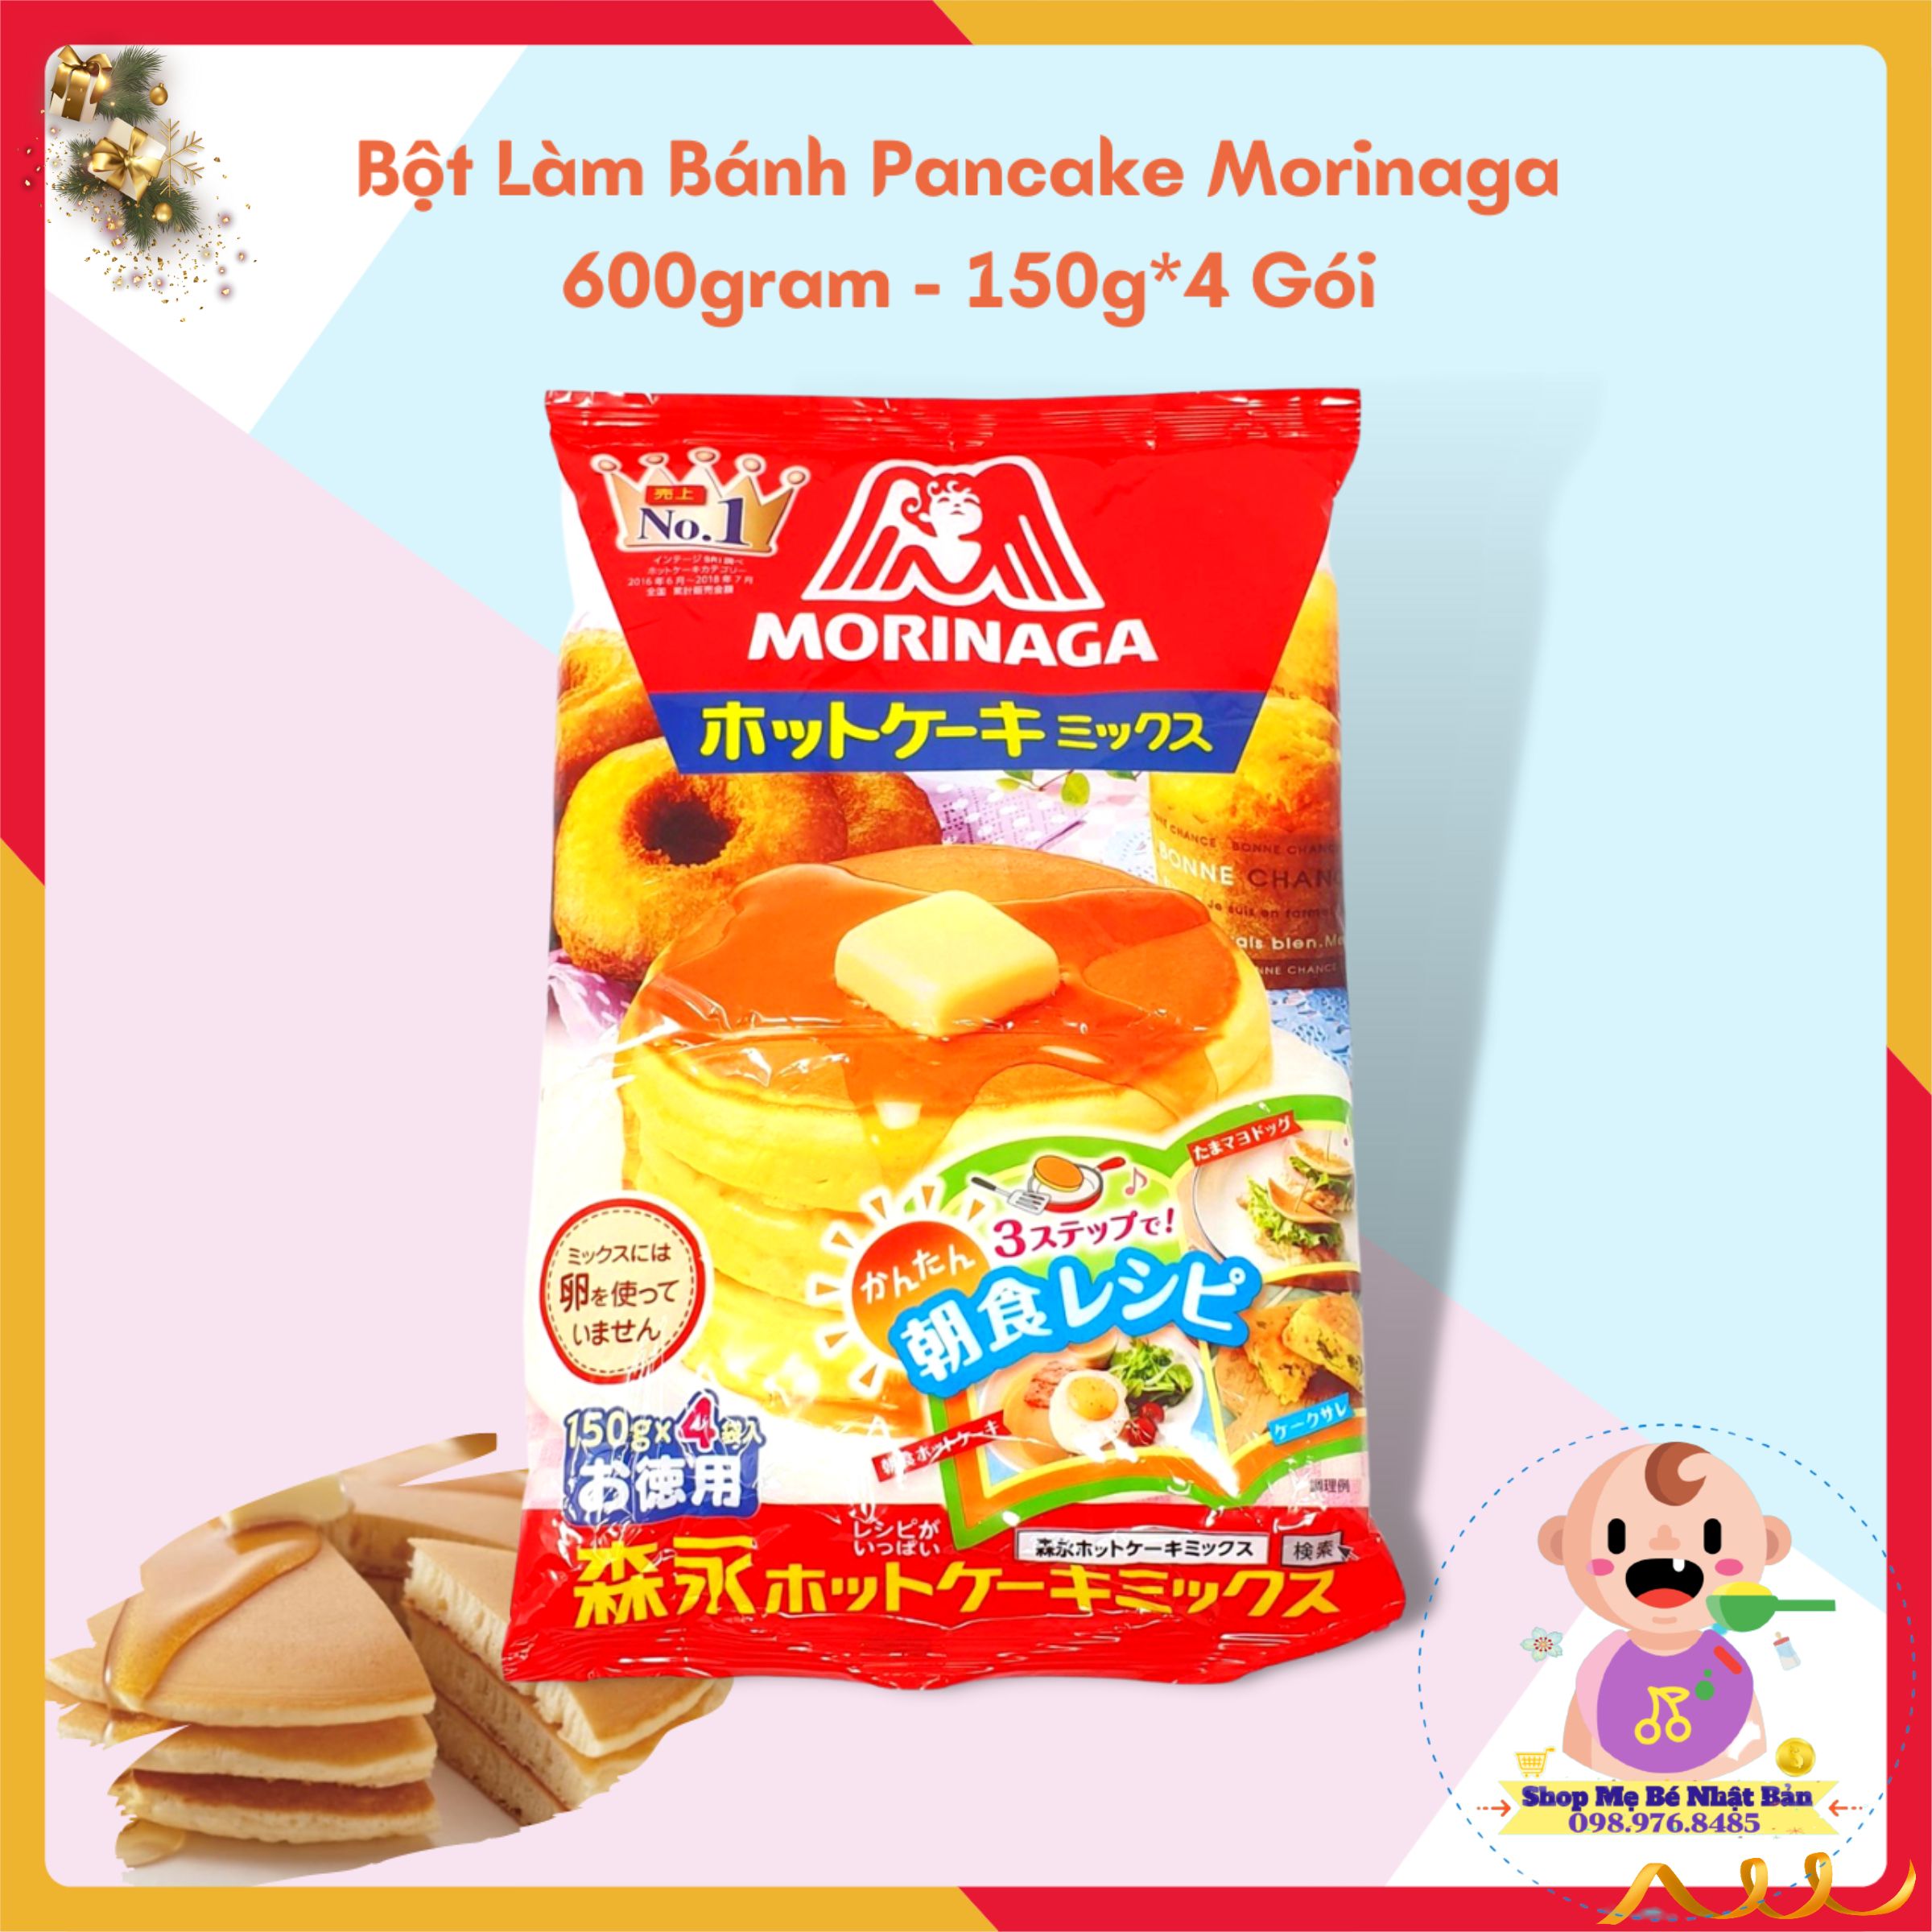 Bột Làm Bánh Pancake Morinaga 600gram - 150g 4 Gói